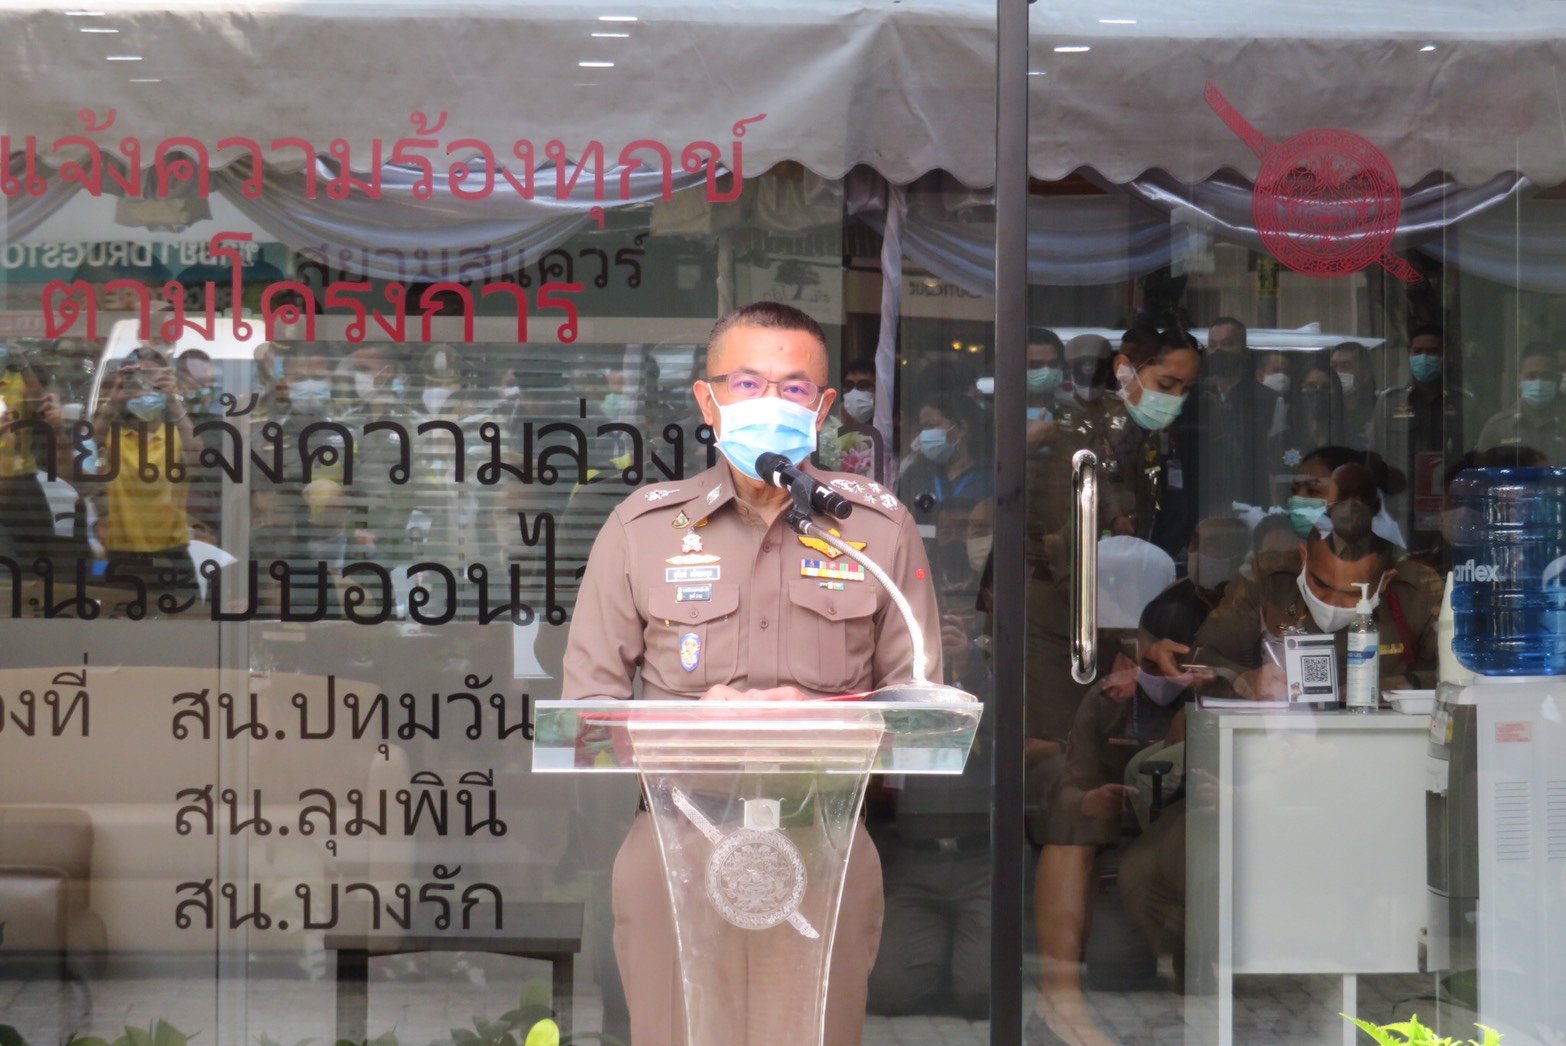 ท่านพล.ต.อ.สุวัฒน์ แจ้งยอดสุข ผบ.ตร. ได้จัดโครงการ "มอบของขวัญปีใหม่  2564 ตำรวจไทยแด่ประชาชน" โดยเป็นประธานพิธีเปิดโครงการ "นัดหมายแจ้งความล่วงหน้า ผ่านระบบออนไลน์" เพื่อบริการประชาชนด้านอำนวยความยุติธรรม โดยมีรองผบ.ตร.,ผู้ช่วยผบ.ตร.ห